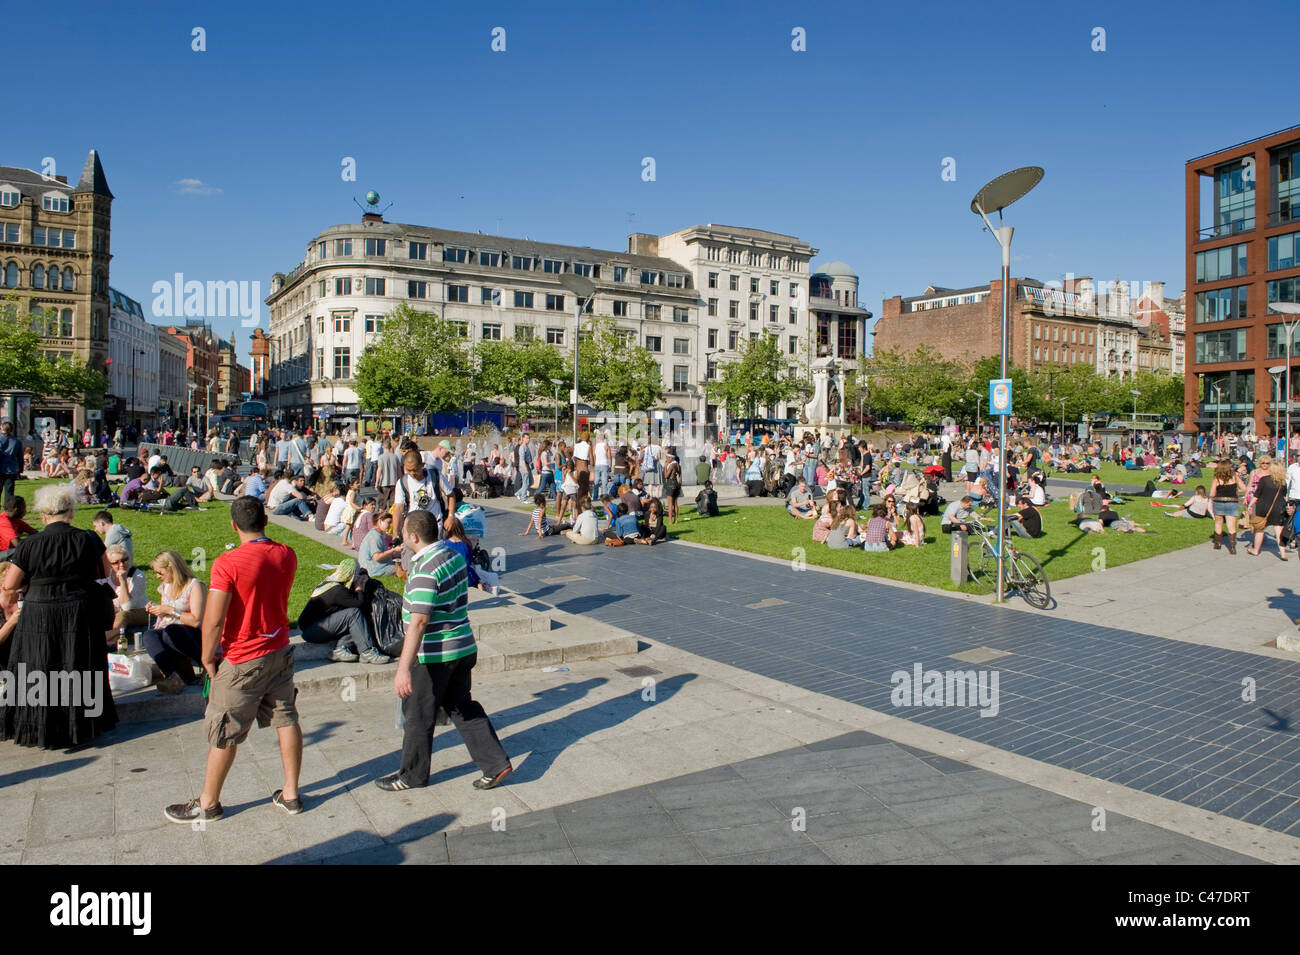 Les gens se rassemblent dans les jardins de Piccadilly, Manchester sur une chaude journée ensoleillée. Banque D'Images